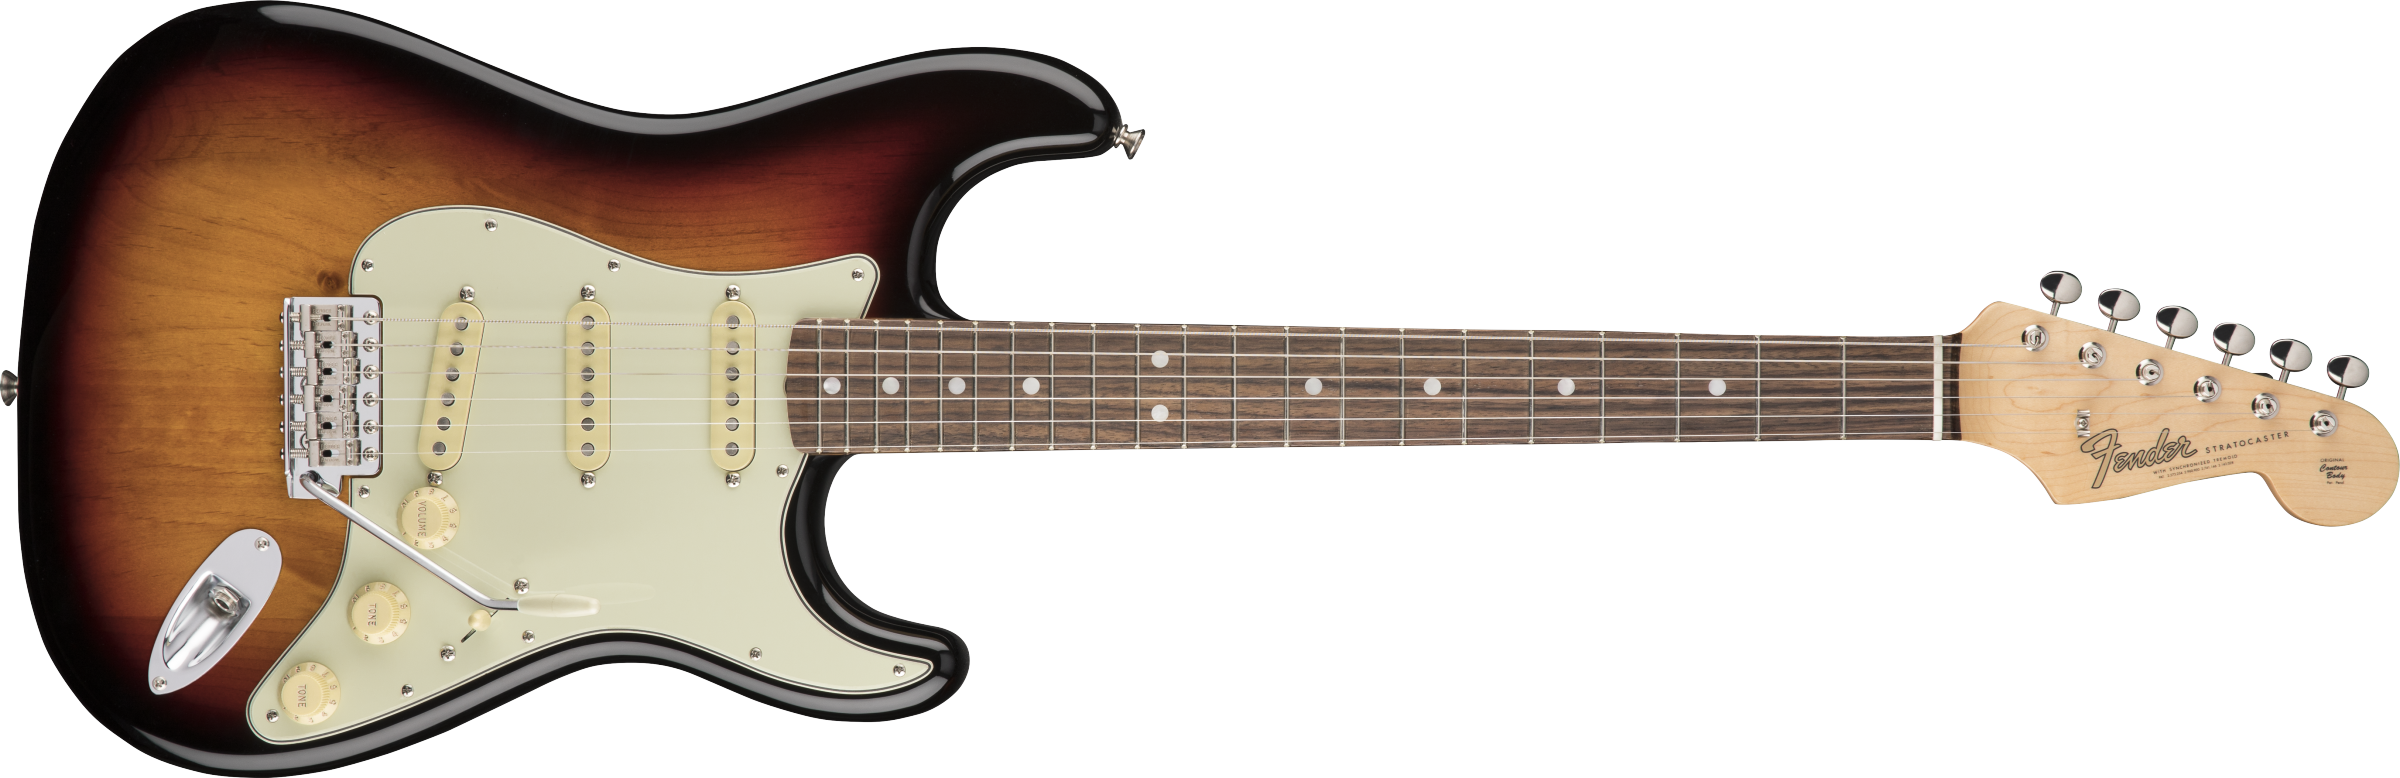 Fender® American Original '60s Stratocaster®, Rosewood Fingerboard, 3-Color Sunburst